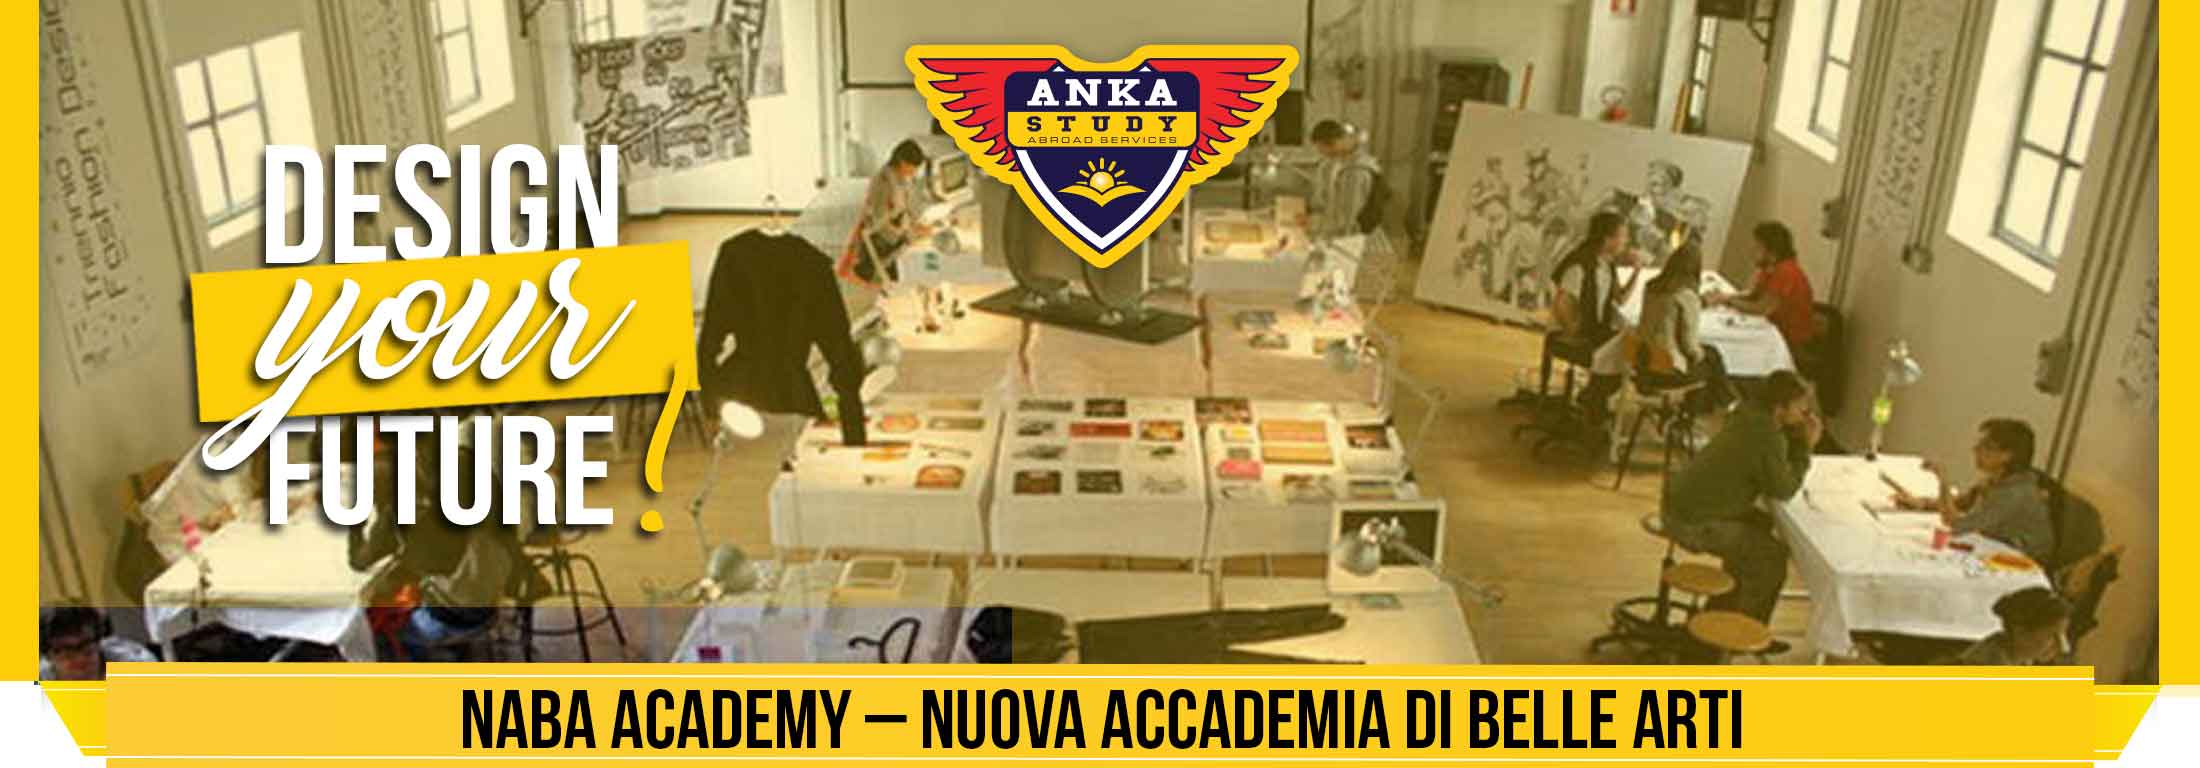 NABA Academy